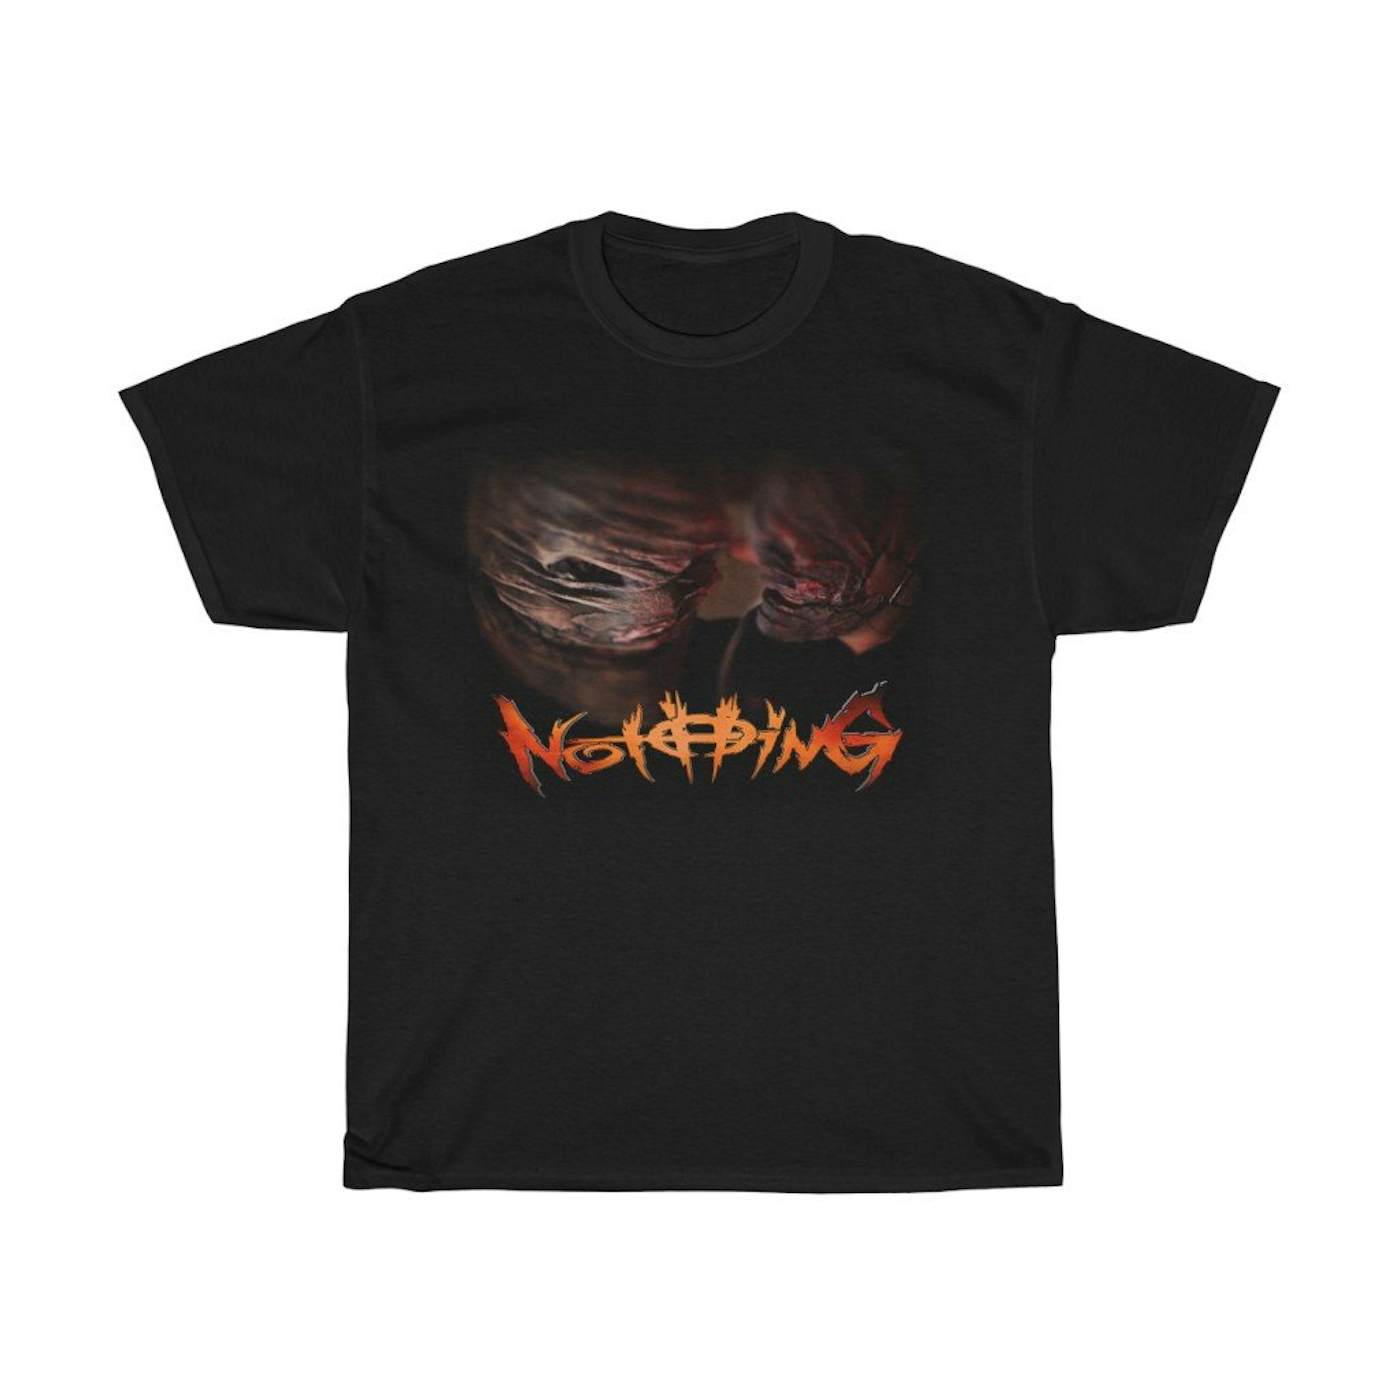 Jeffrey Nothing - Addams Shirt